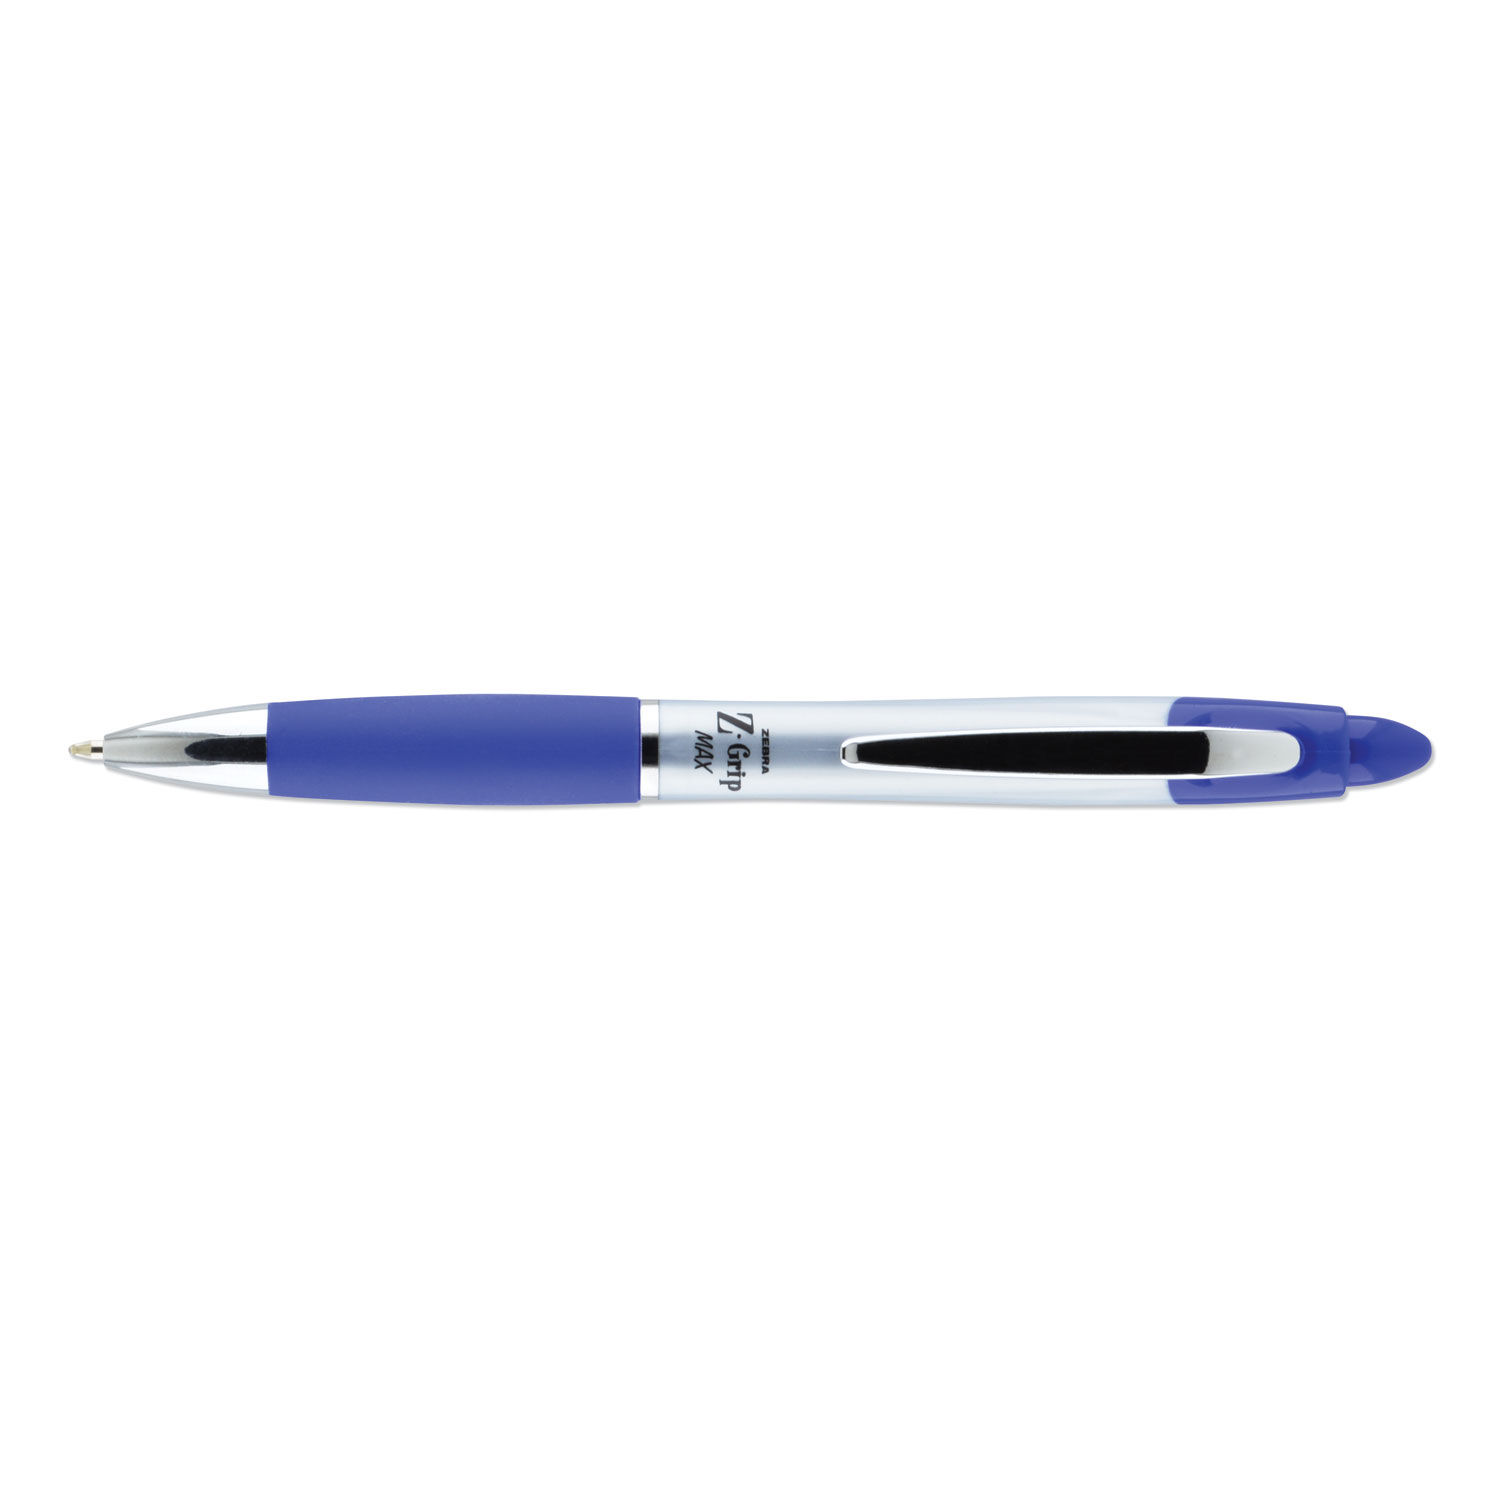 max pen ballpoint pen